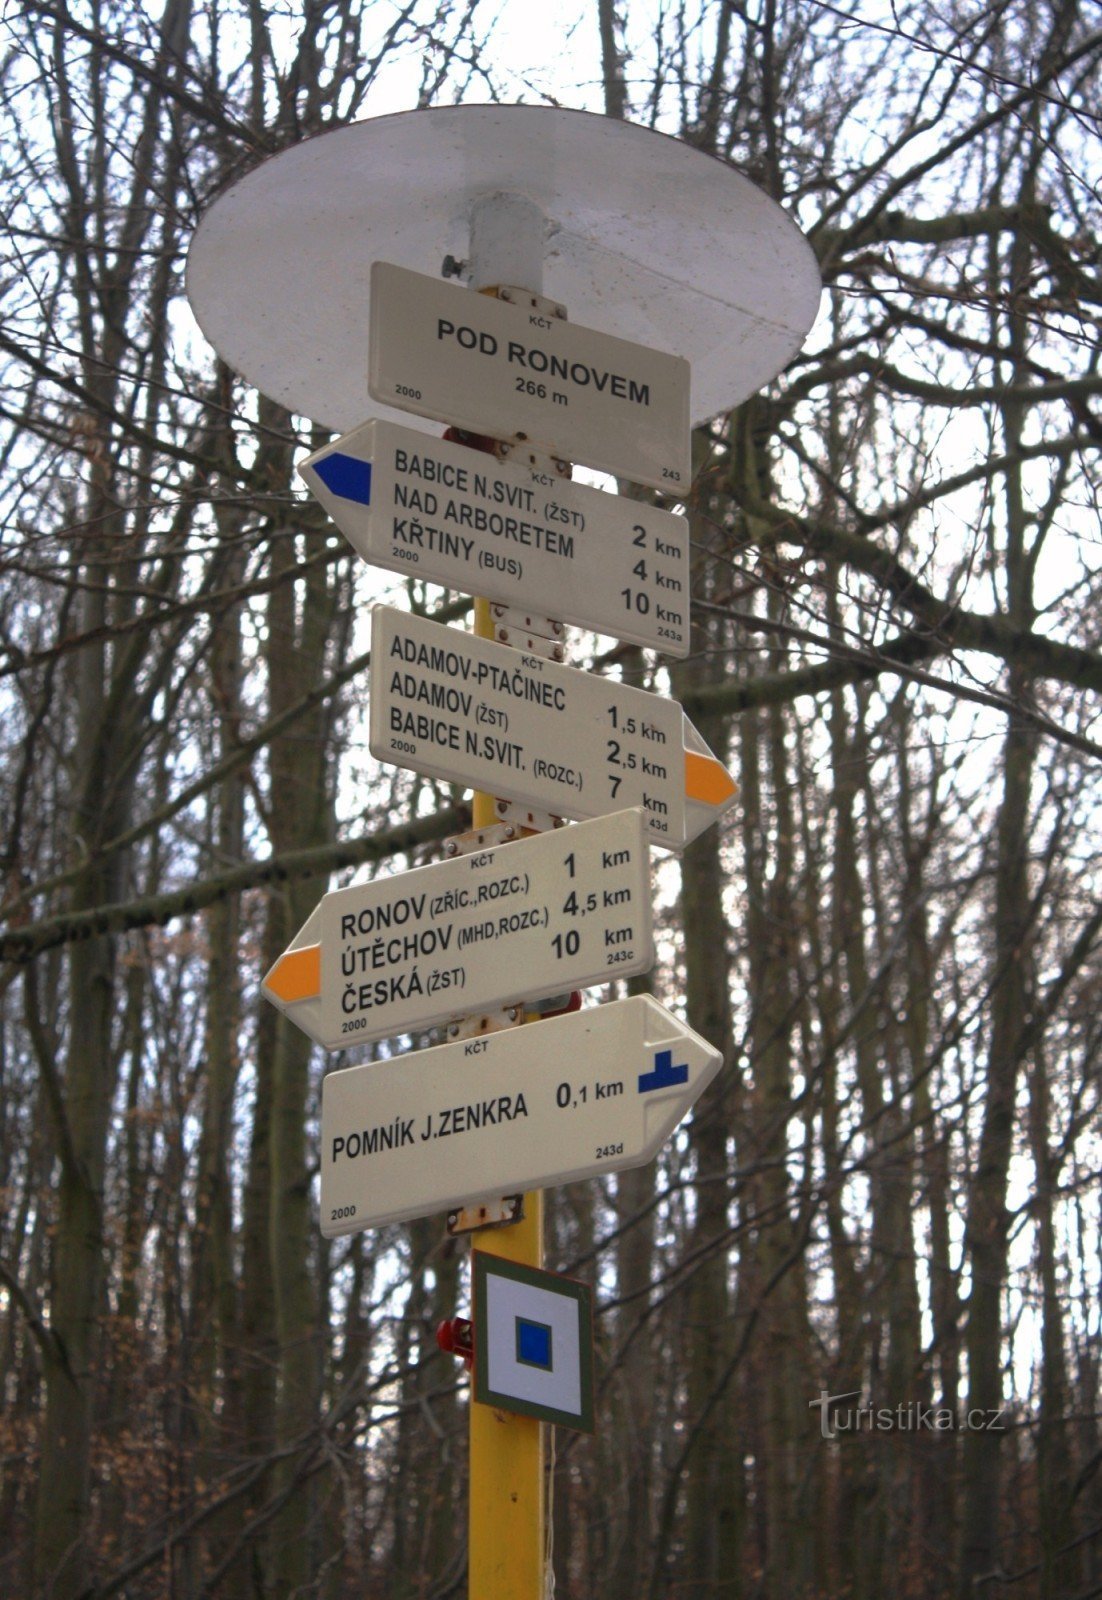 Crossroads Pod Ronovem - placa de sinalização